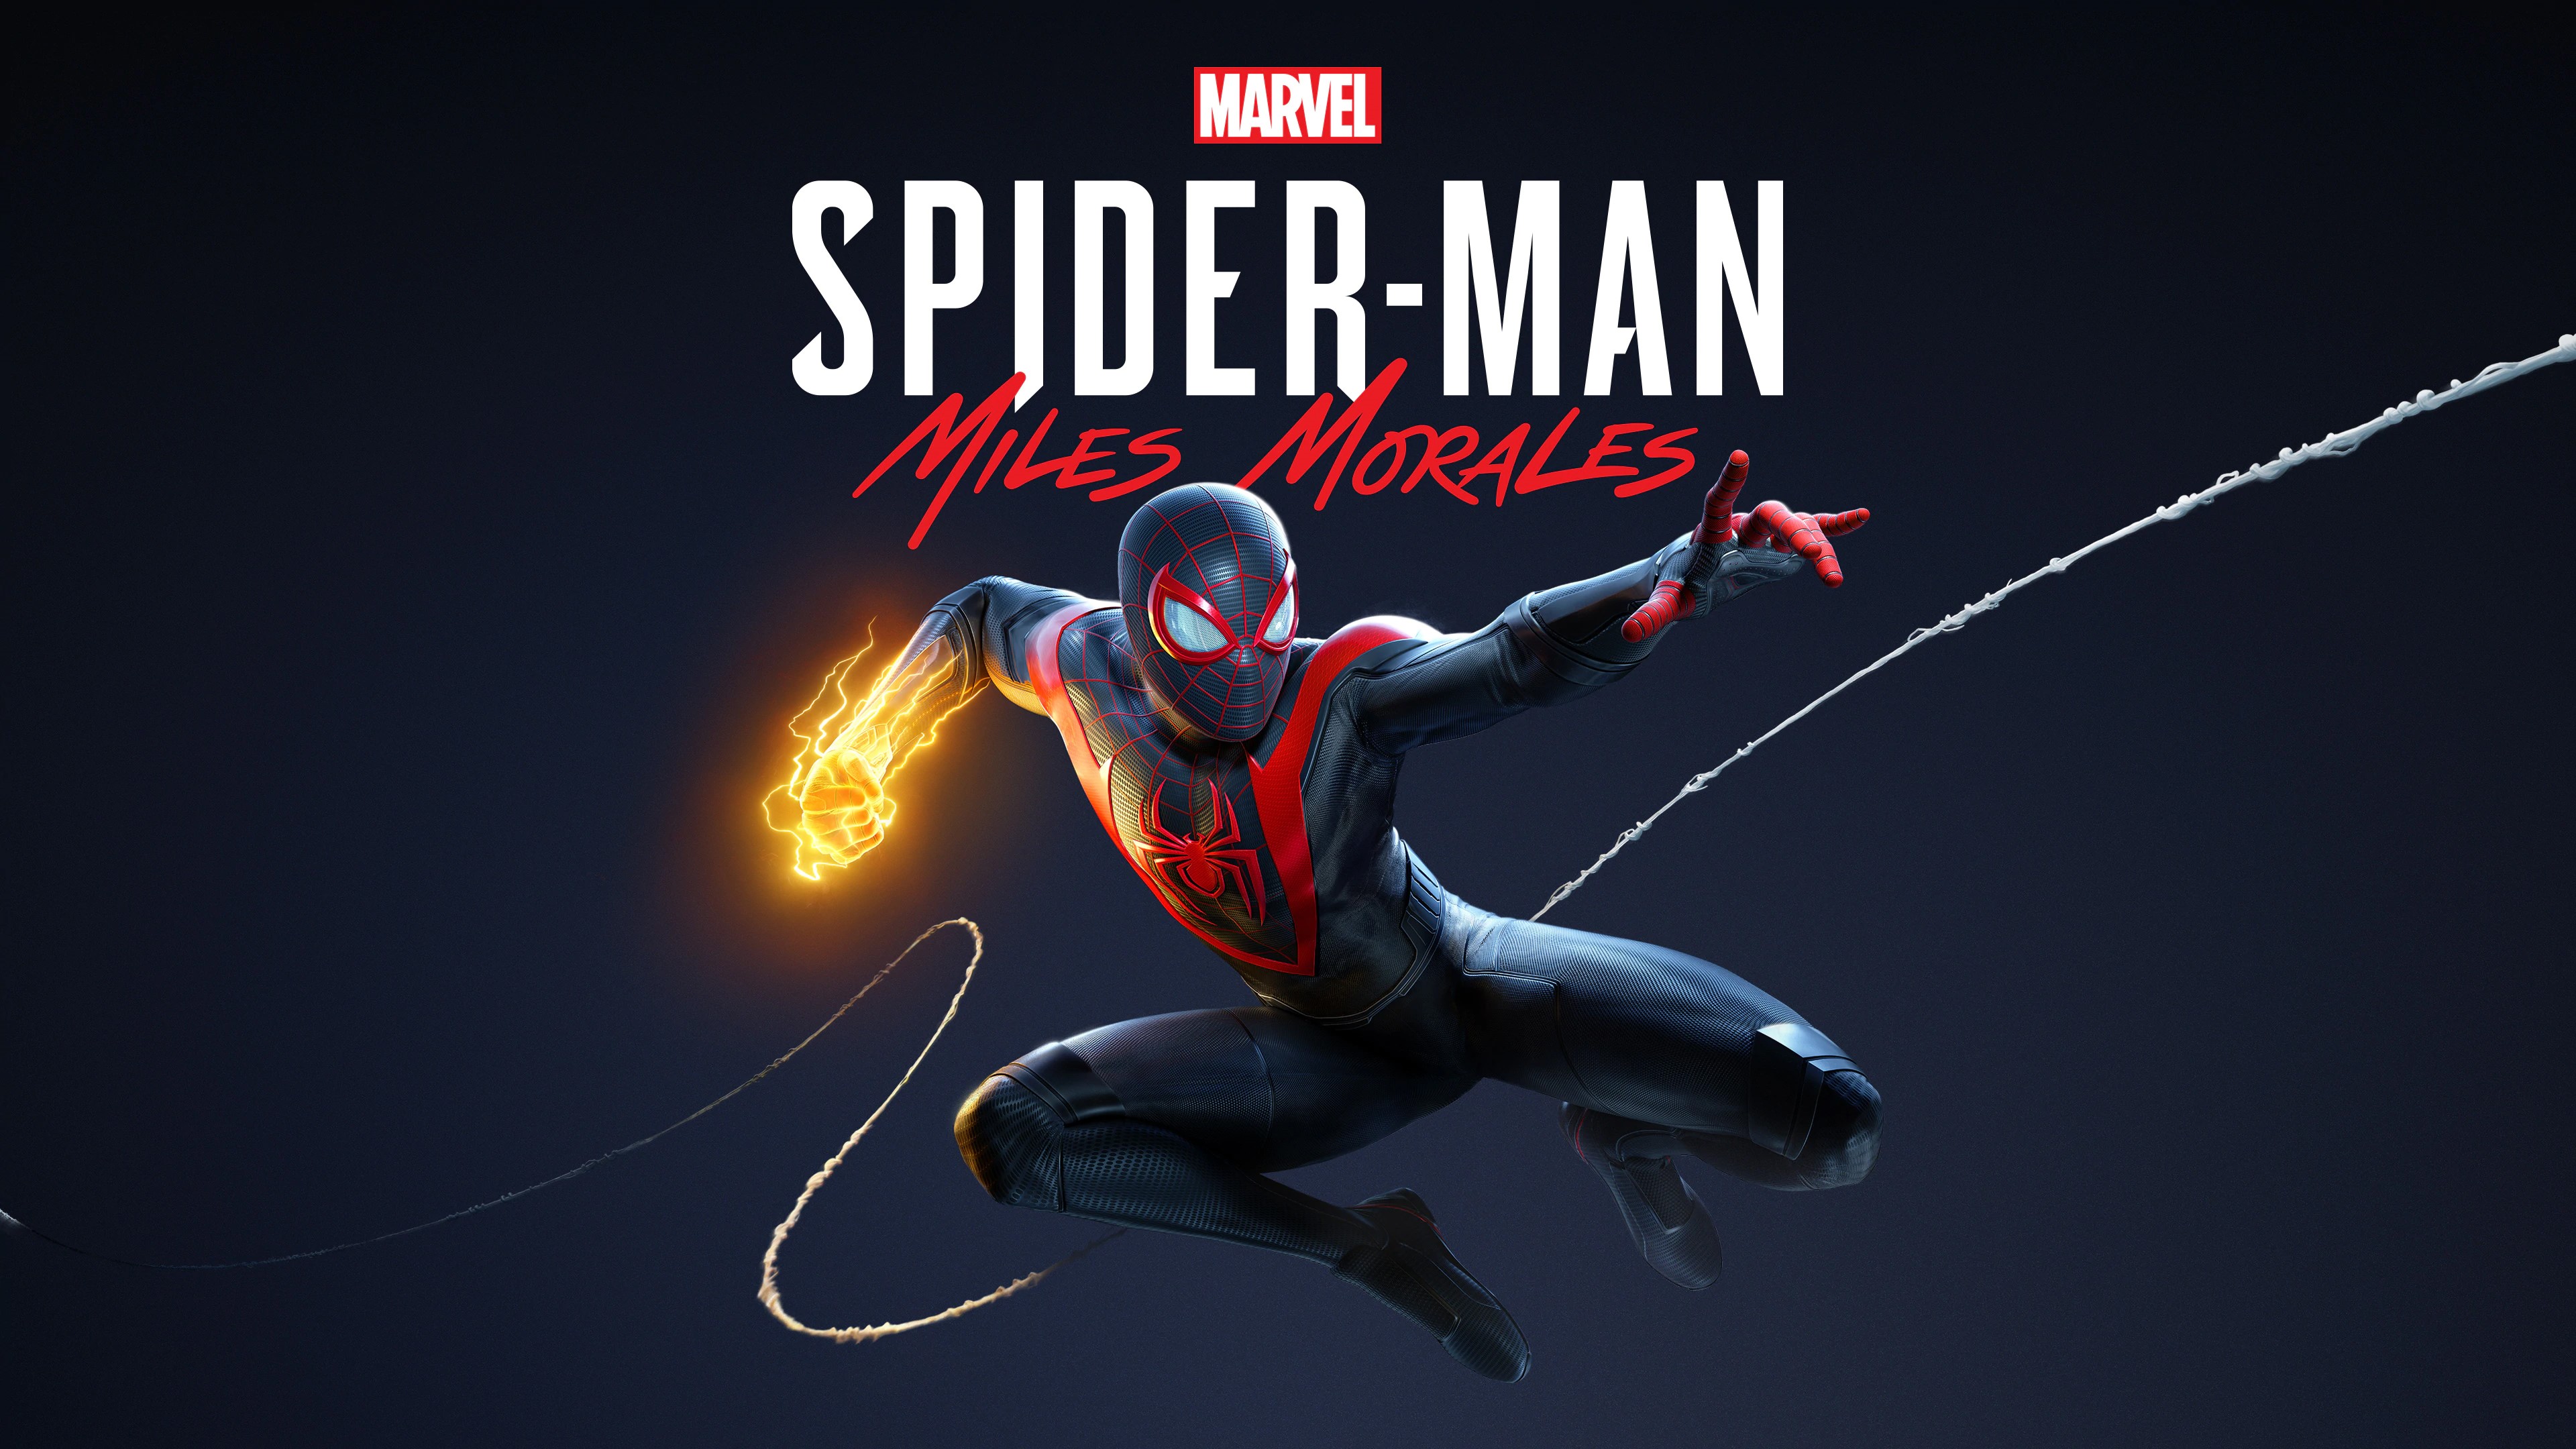 Marvel's Человек-паук /// Spider-Man: Miles Morales ( прохождение 8 )